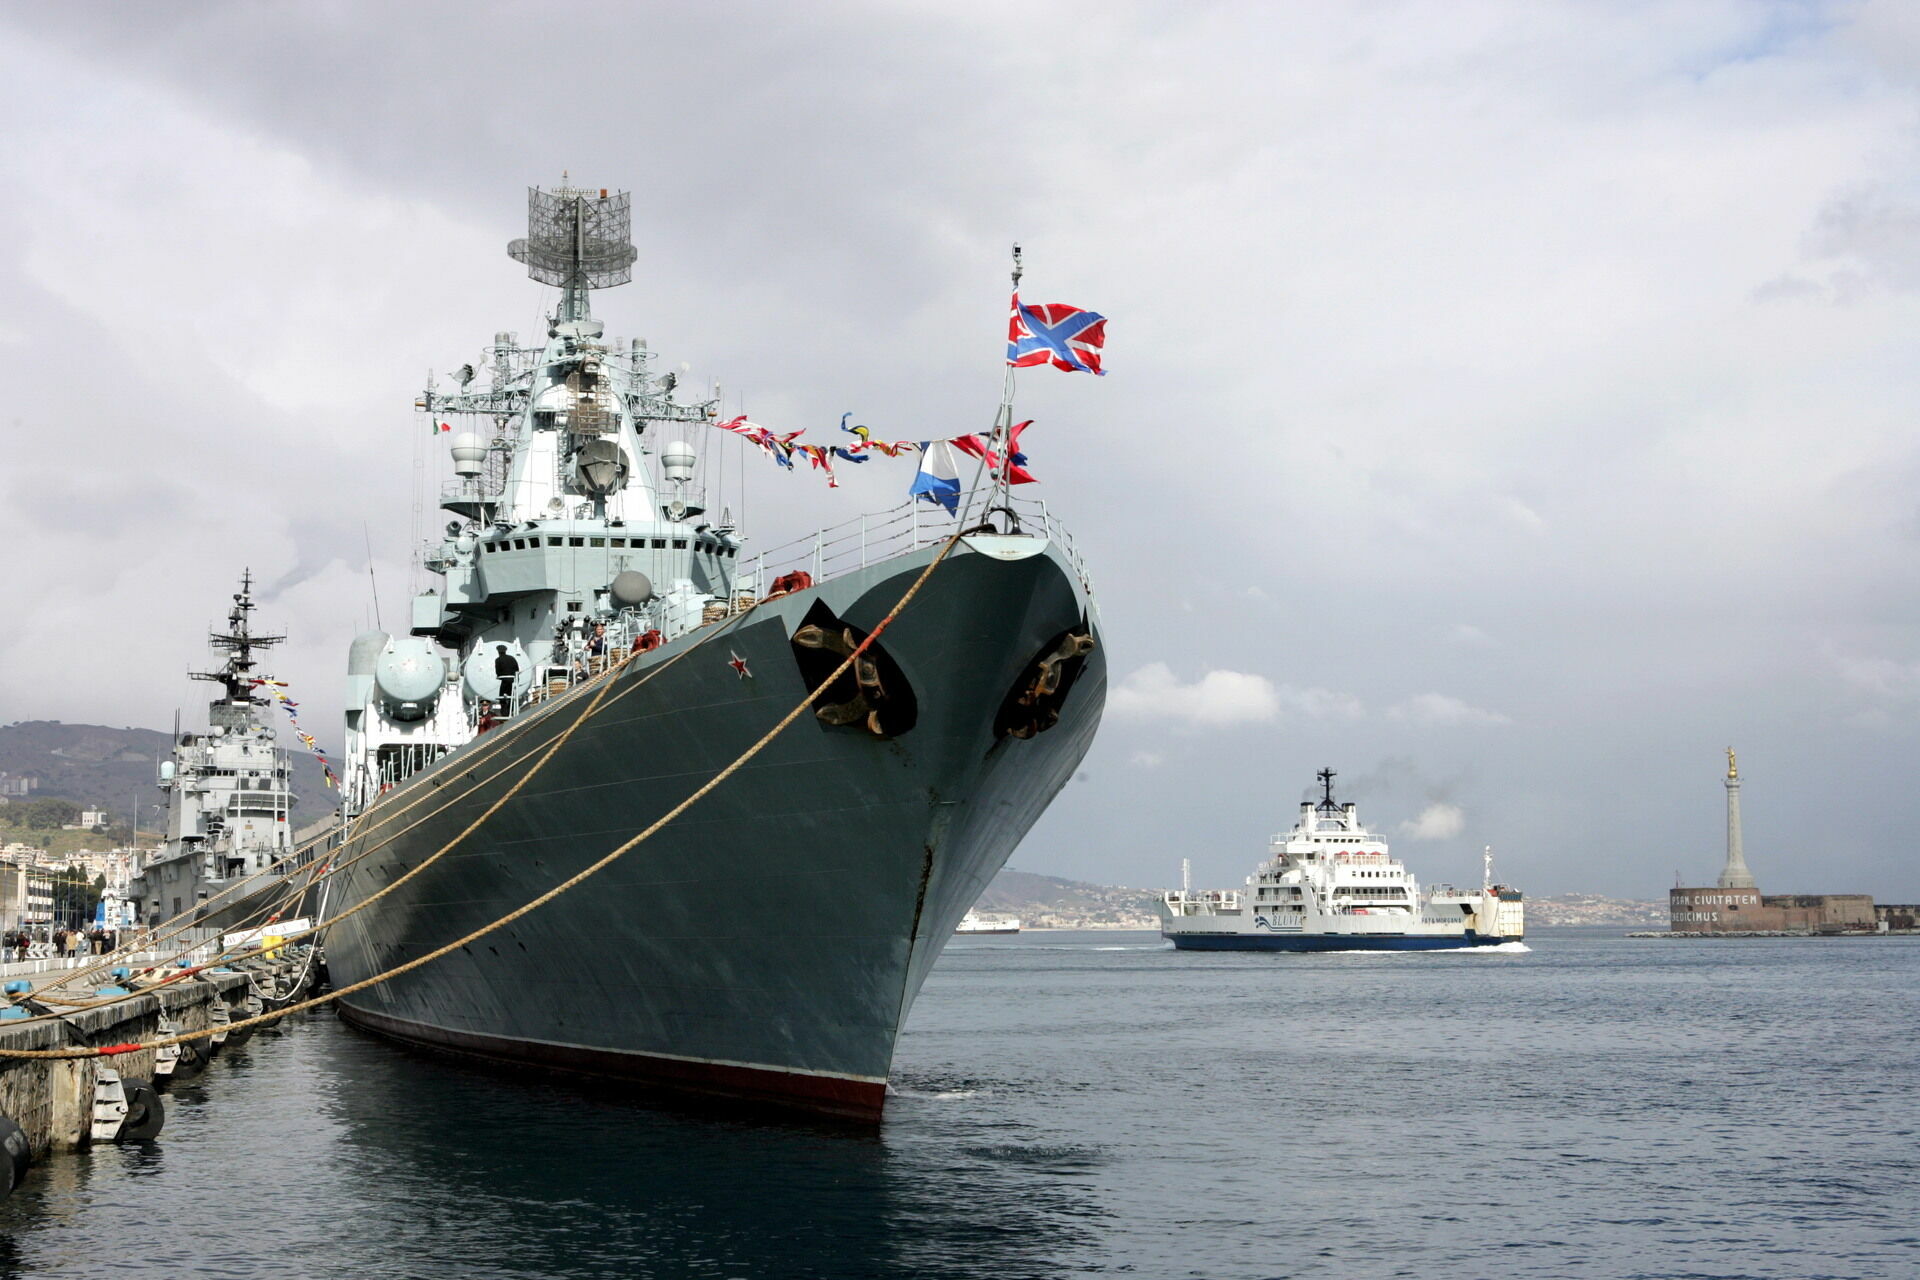 Глава Севастополя заявил о скором возвращении в строй матросов крейсера "Москва"